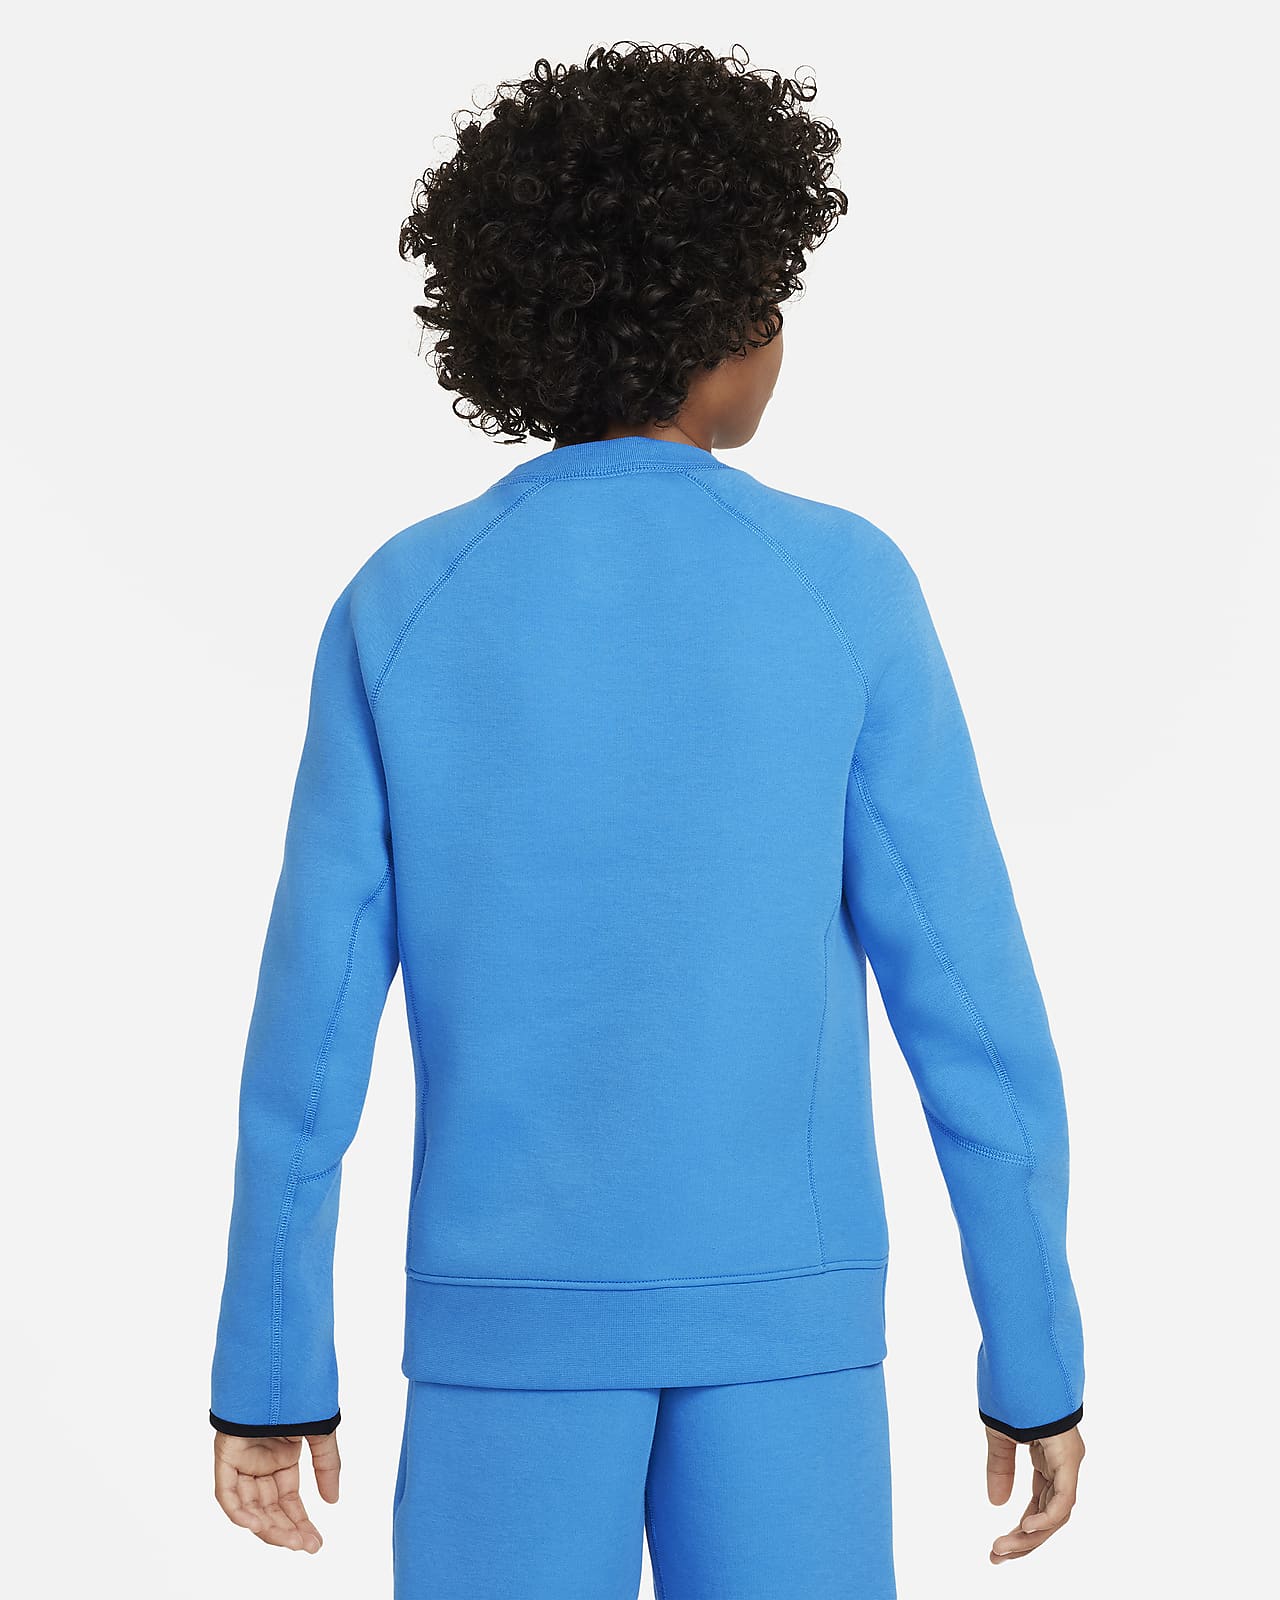 Nike Sportswear Tech Fleece Older Kids' (Boys') Sweatshirt